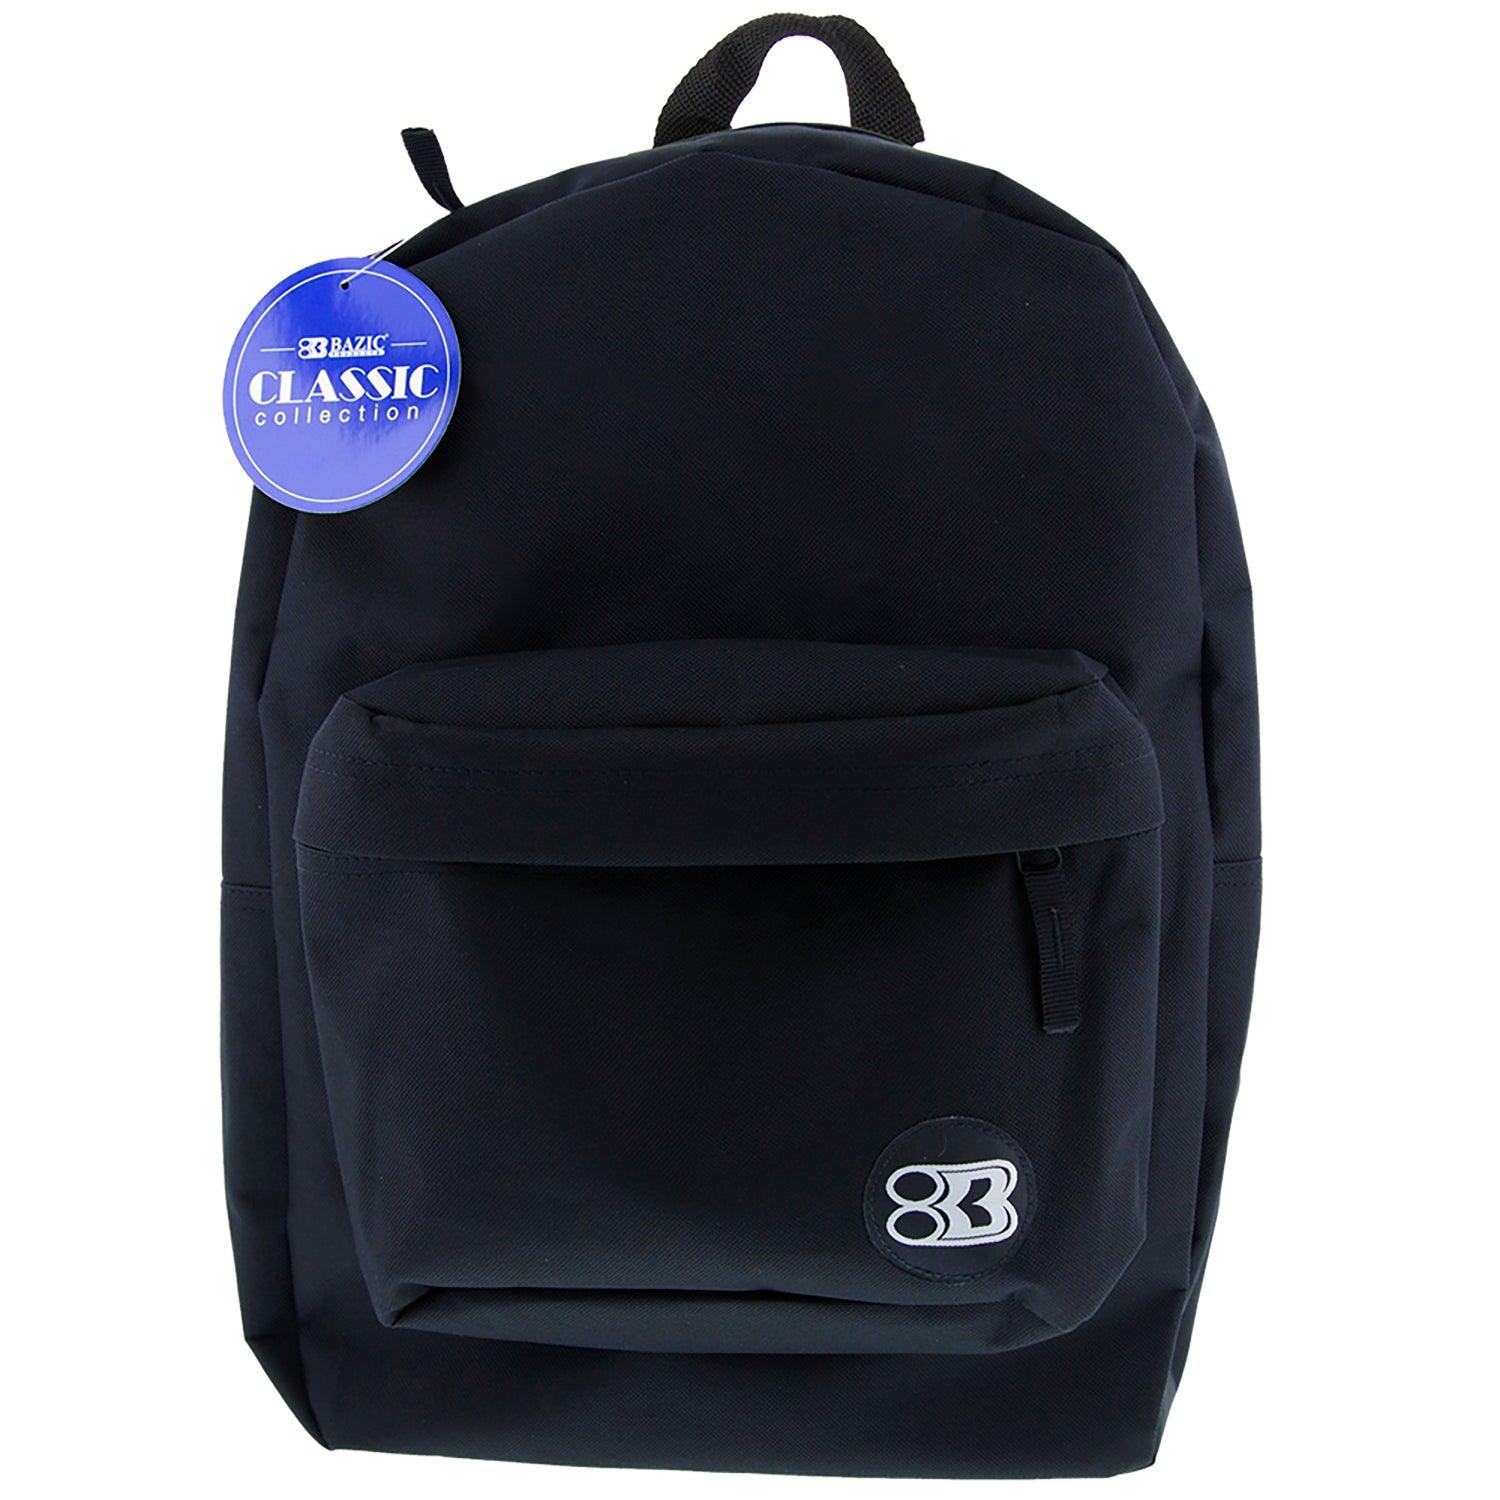 Classic Backpack 17" Black - Loomini